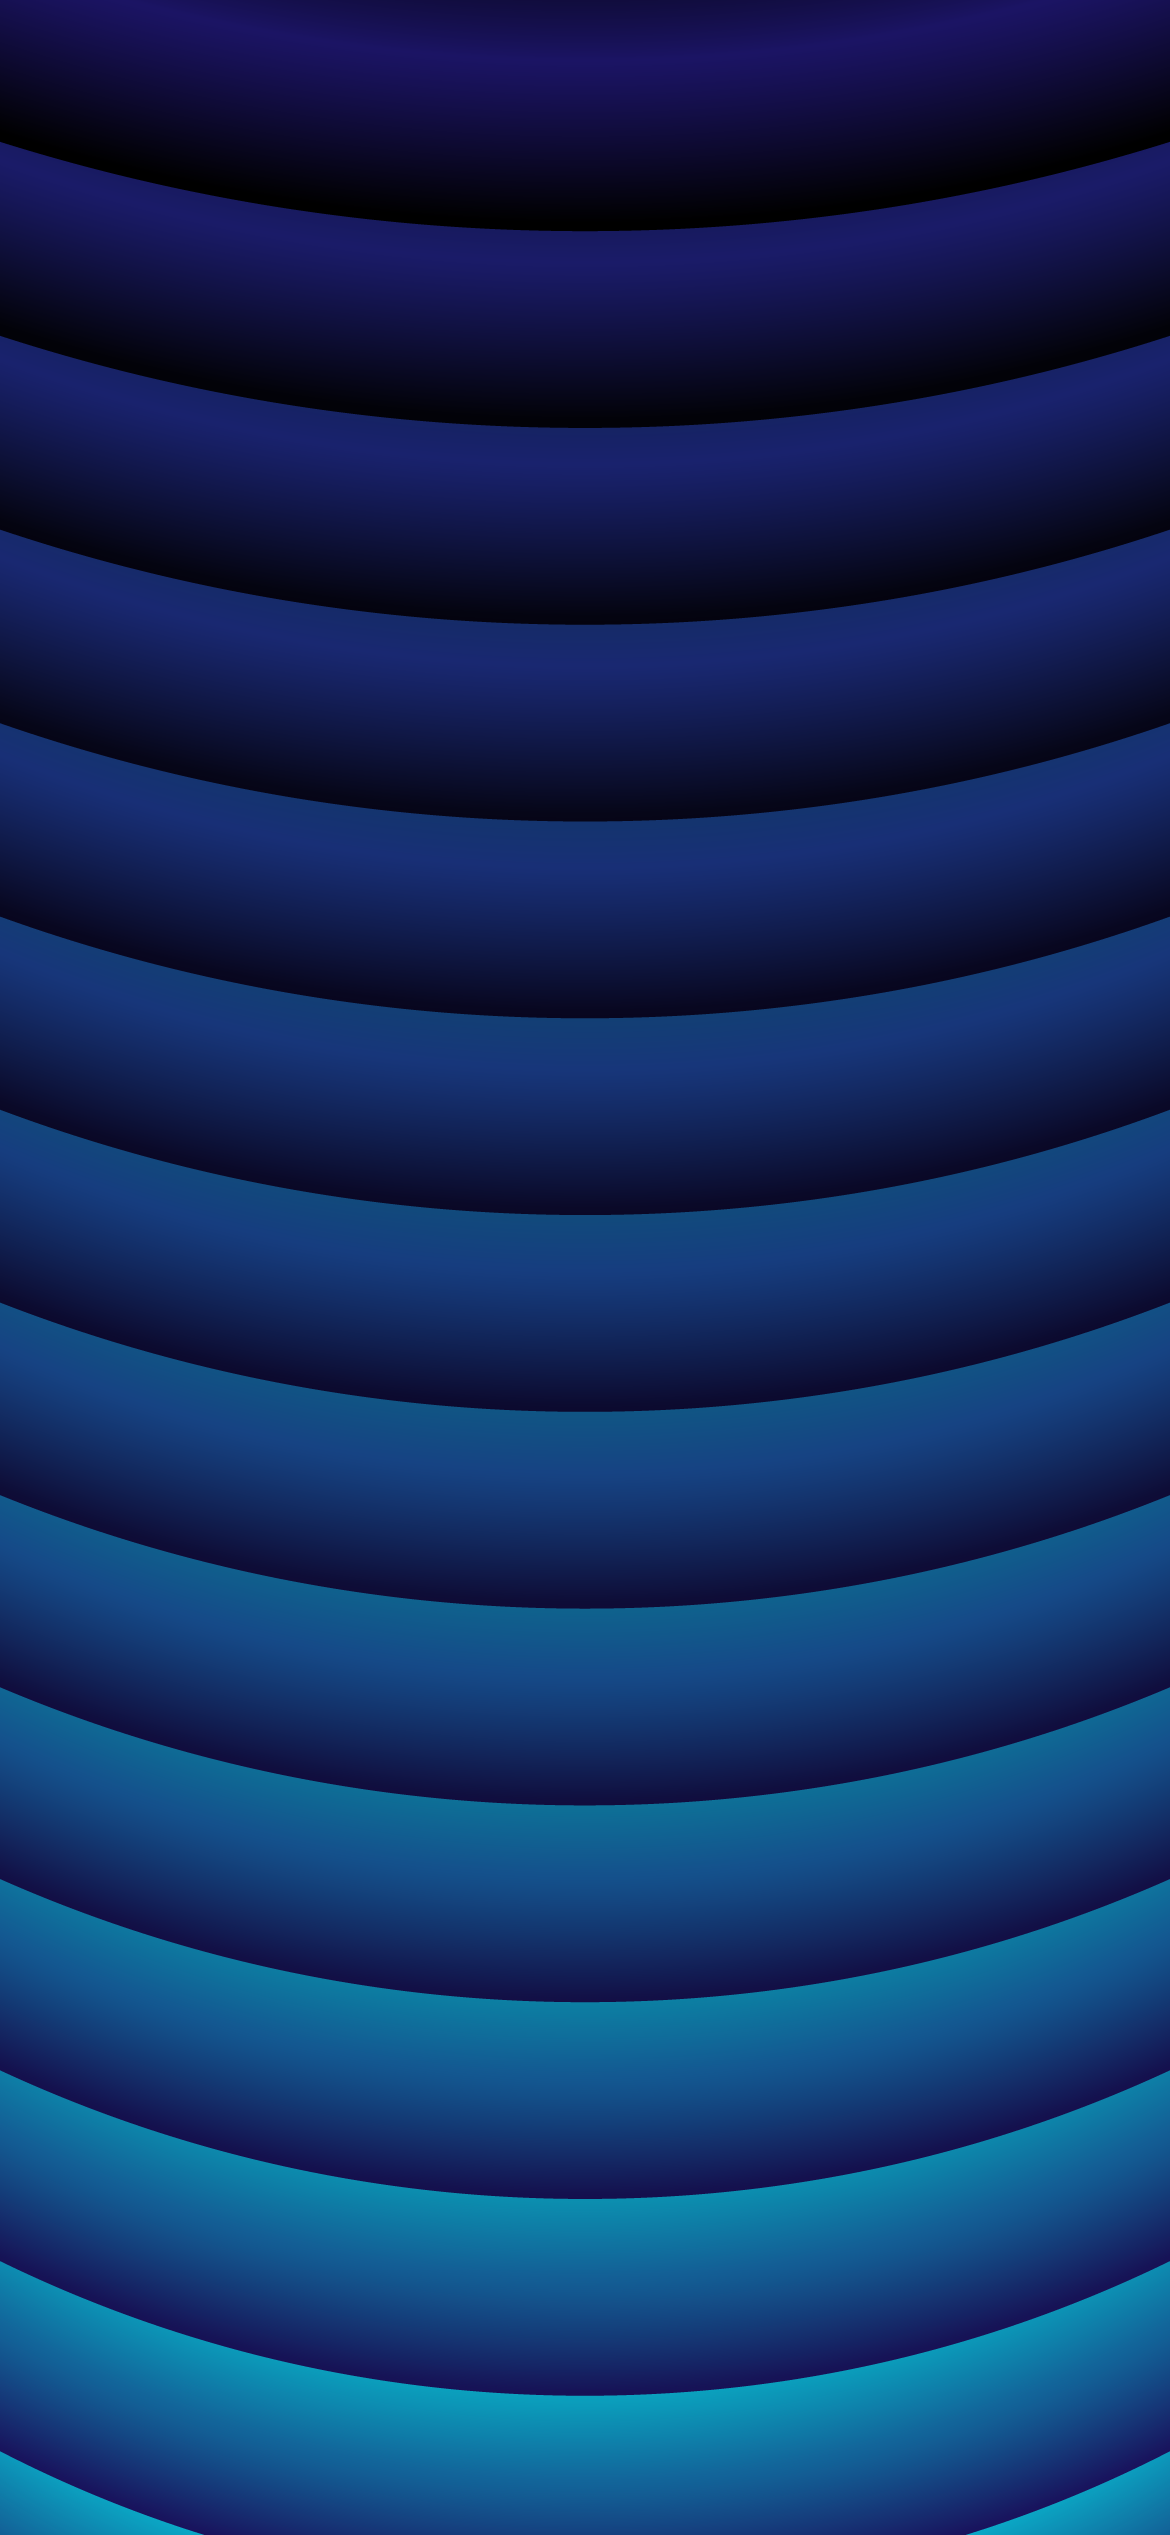 Hình nền điện thoại gradient xanh dương 4k: Trang trí điện thoại của bạn với hình nền gradient xanh dương 4k để tạo ra một màn hình đẹp mắt và ấn tượng. Hình ảnh đầy màu sắc và sự chuyển động trên nền xanh dương đem lại cho bạn một trải nghiệm độc đáo. Nhấp vào ảnh để khám phá!